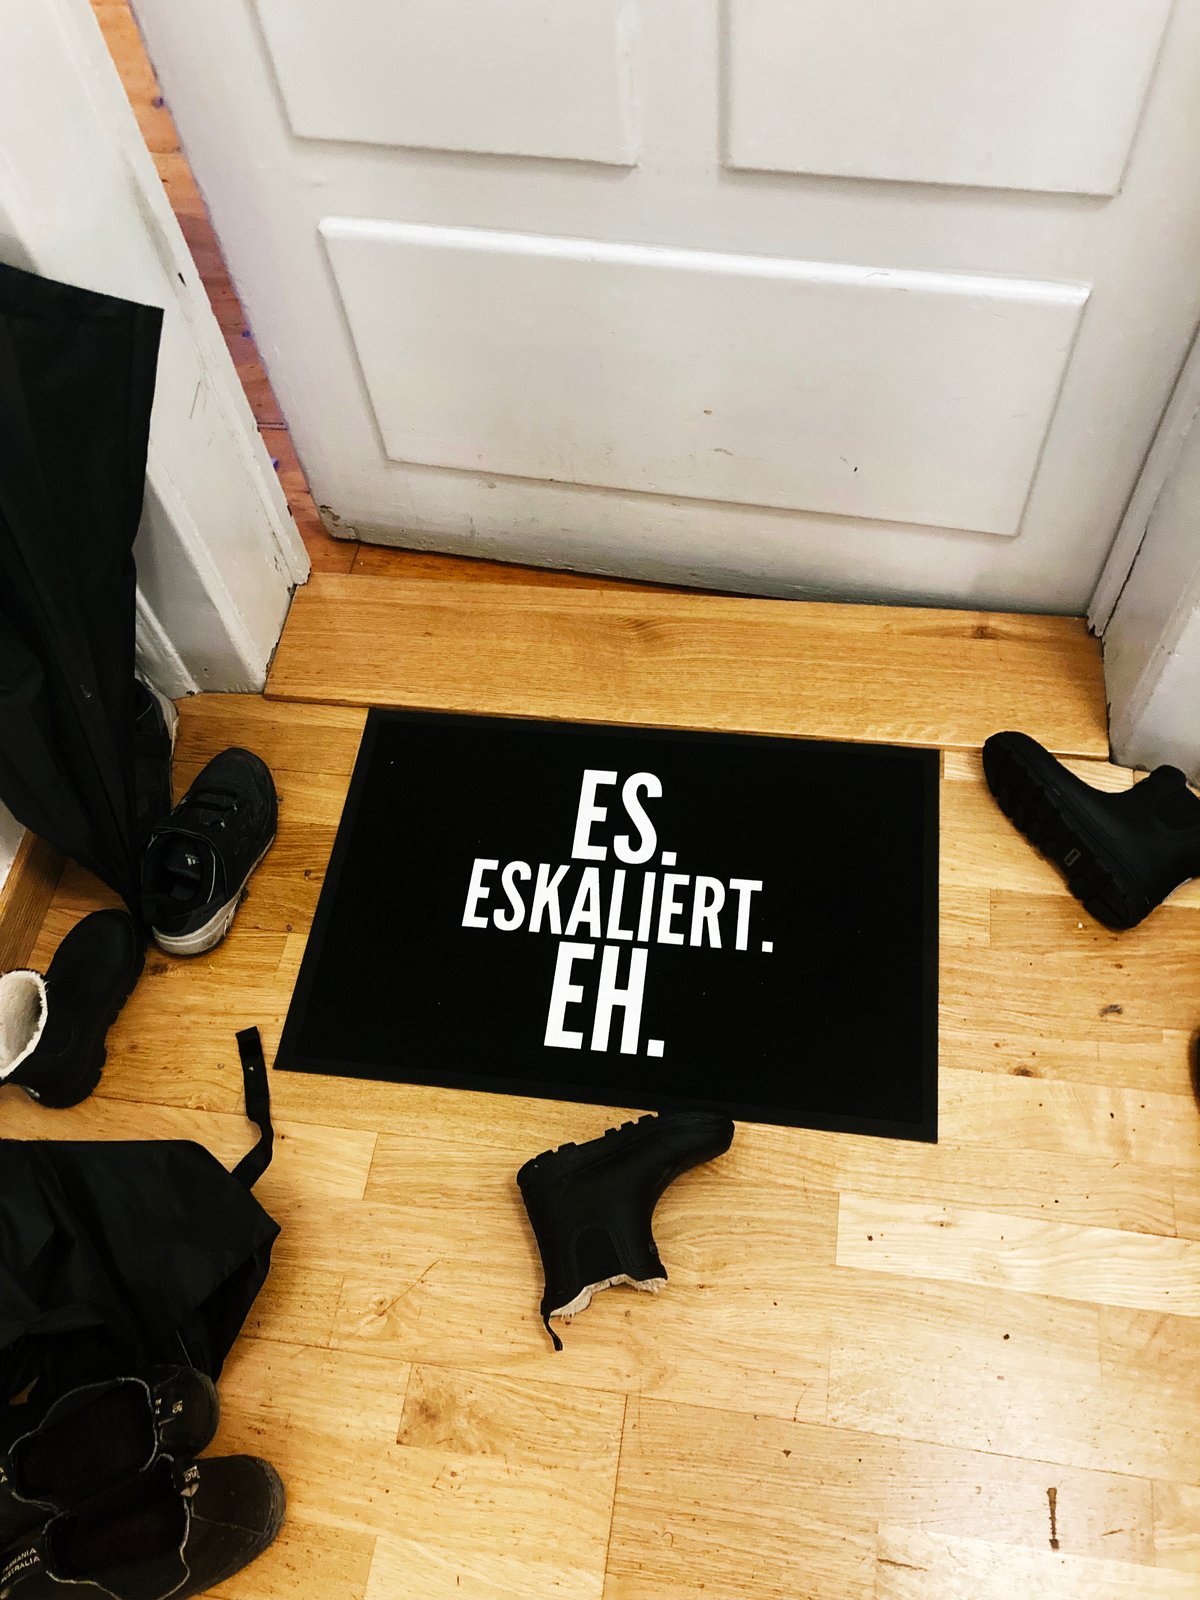 Image of Not just another doormat "Es Eskaliert Eh"! Fussabstreifer!